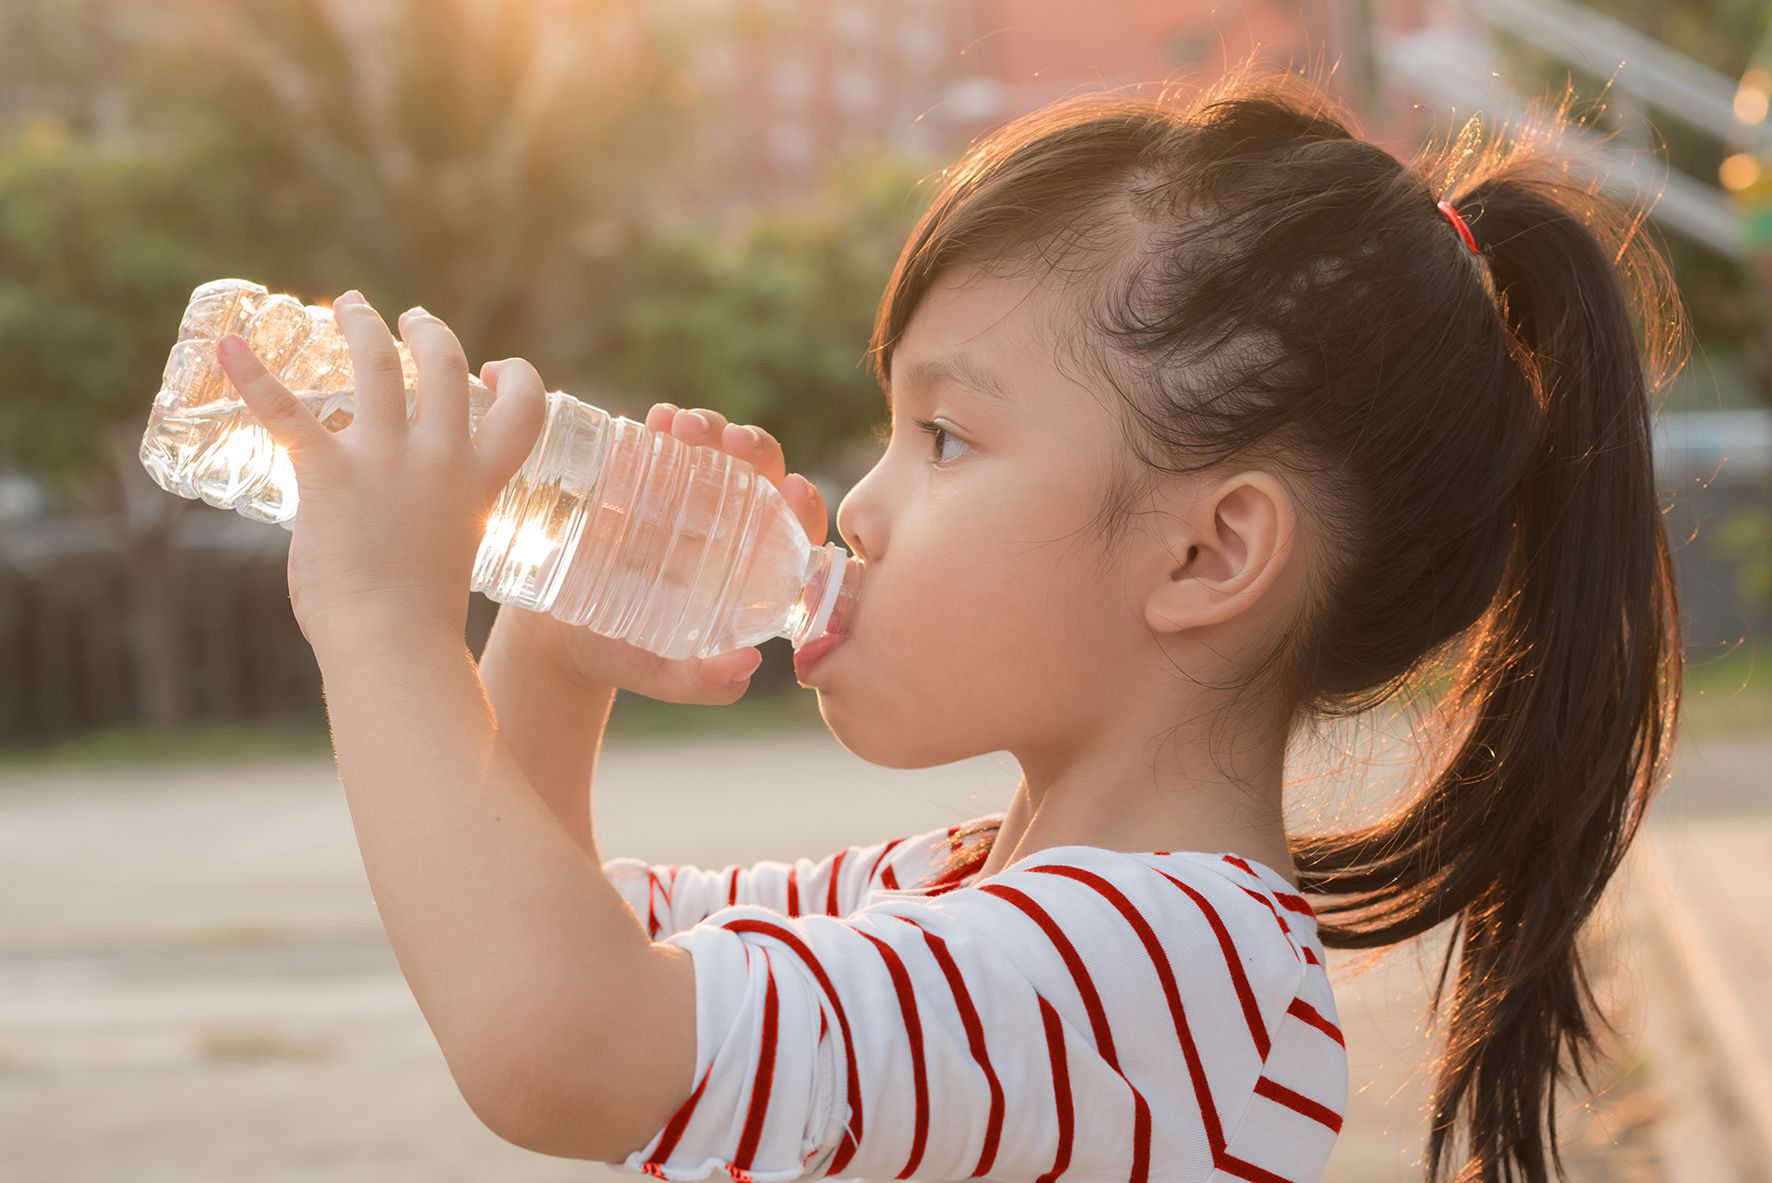 Ajari anak untuk minum lebih banyak air putih